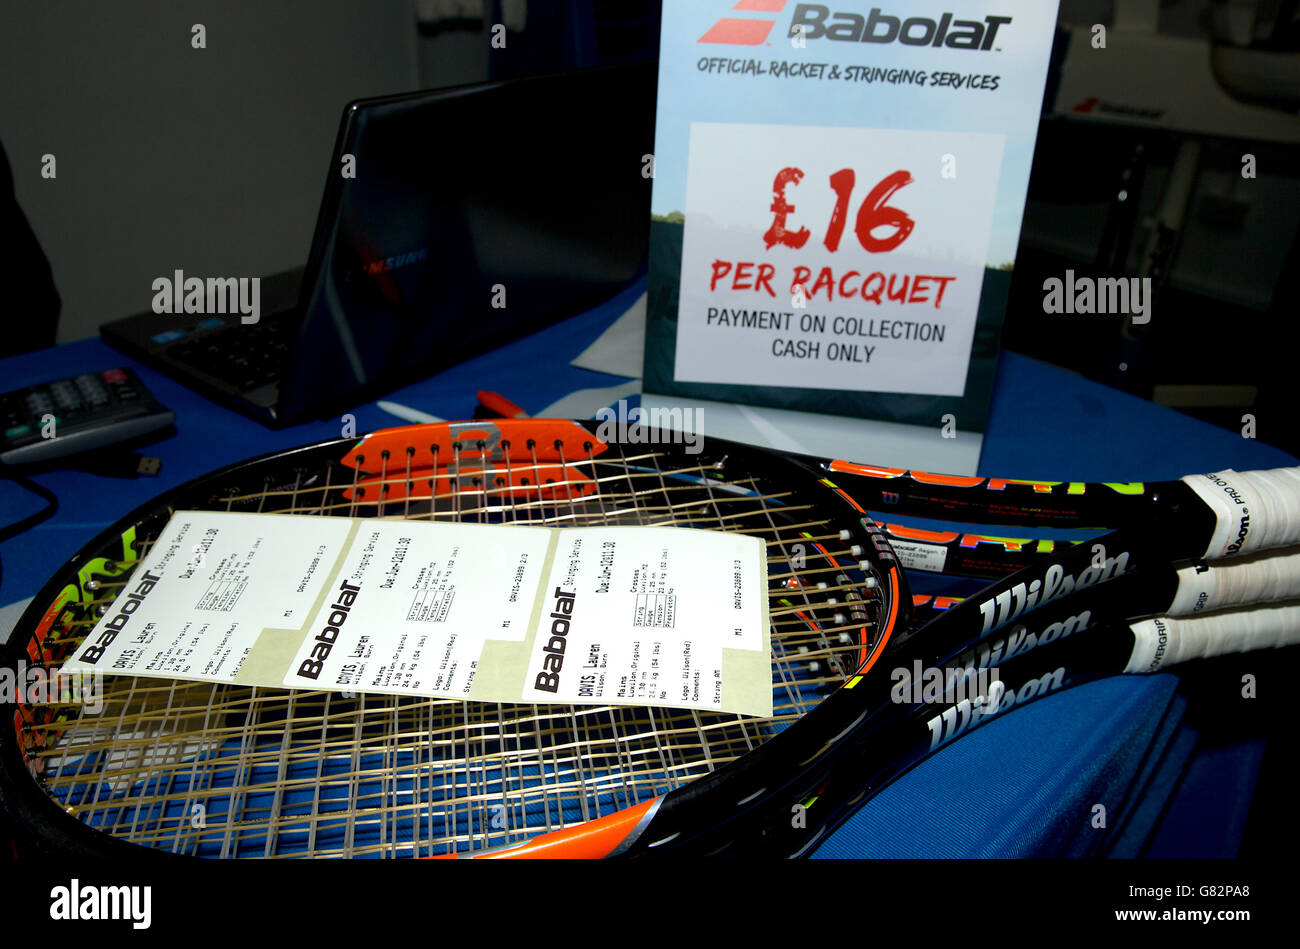 Tennis - 2015 Aegon Open Nottingham - Tag Fünf - Nottingham Tennis Center. Ein Haufen neu aufgereihter Tennisschläger im Stringer-Raum Stockfoto